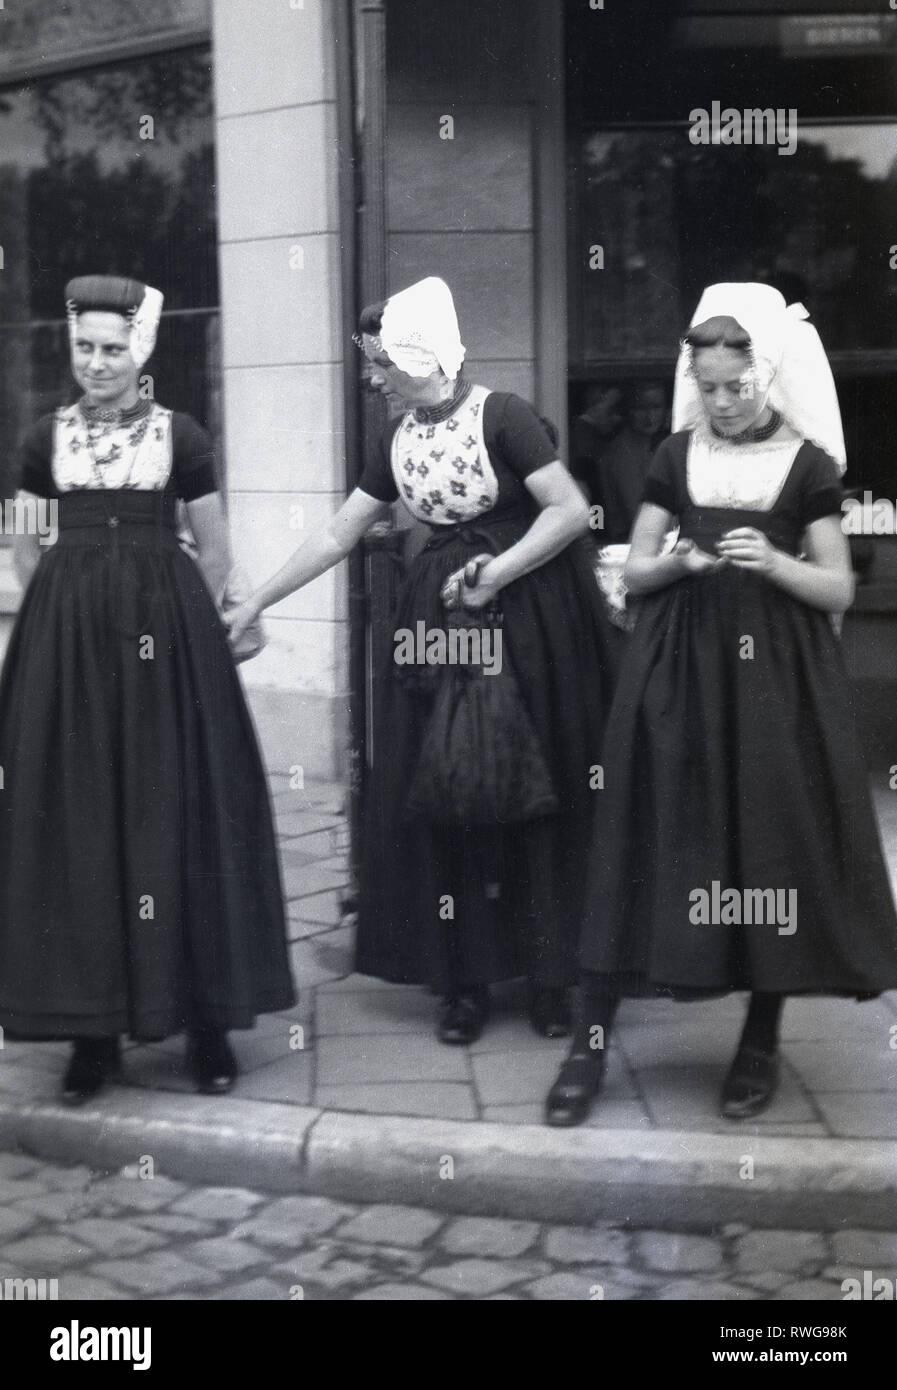 1950er Jahre, drei Frauen außerhalb stehend auf einem Bürgersteig, die traditionelle Kleidung der lange schwarze Röcke und weisse Haarnetze, Brüssel, Belgien. Stockfoto